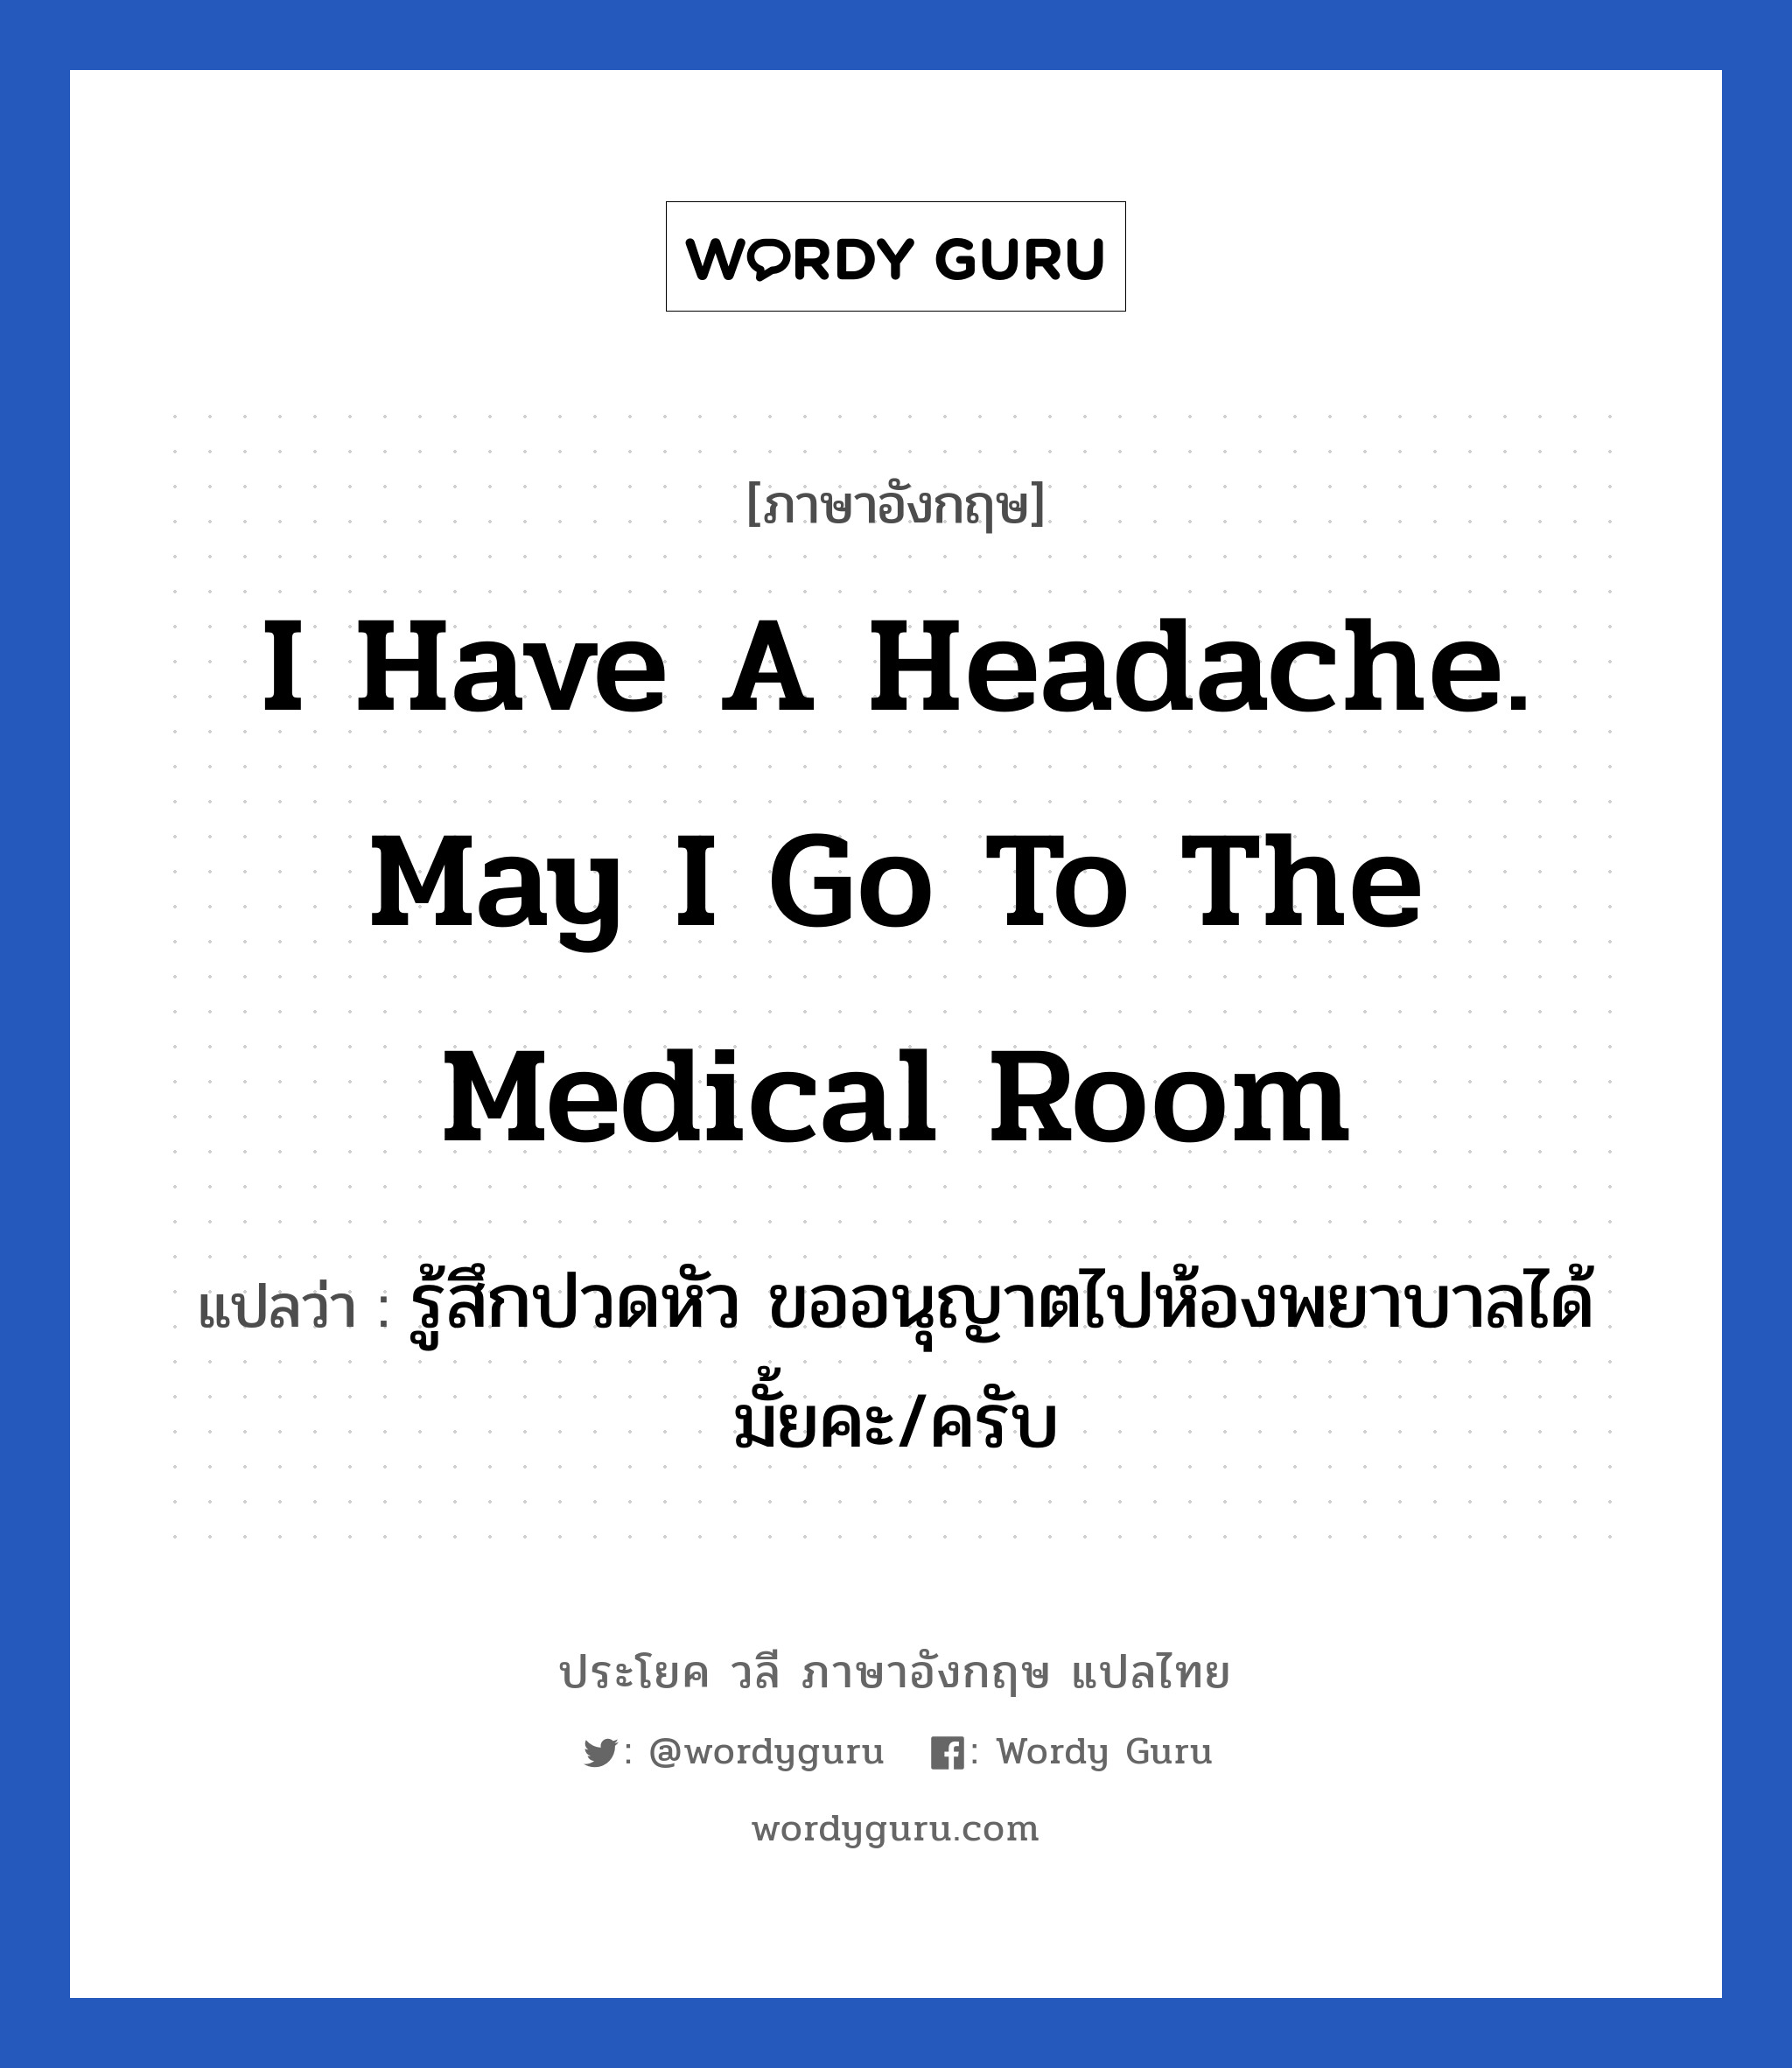 รู้สึกปวดหัว ขออนุญาตไปห้องพยาบาลได้มั้ยคะ/ครับ ภาษาอังกฤษ?, วลีภาษาอังกฤษ รู้สึกปวดหัว ขออนุญาตไปห้องพยาบาลได้มั้ยคะ/ครับ แปลว่า I have a headache. May I go to the medical room